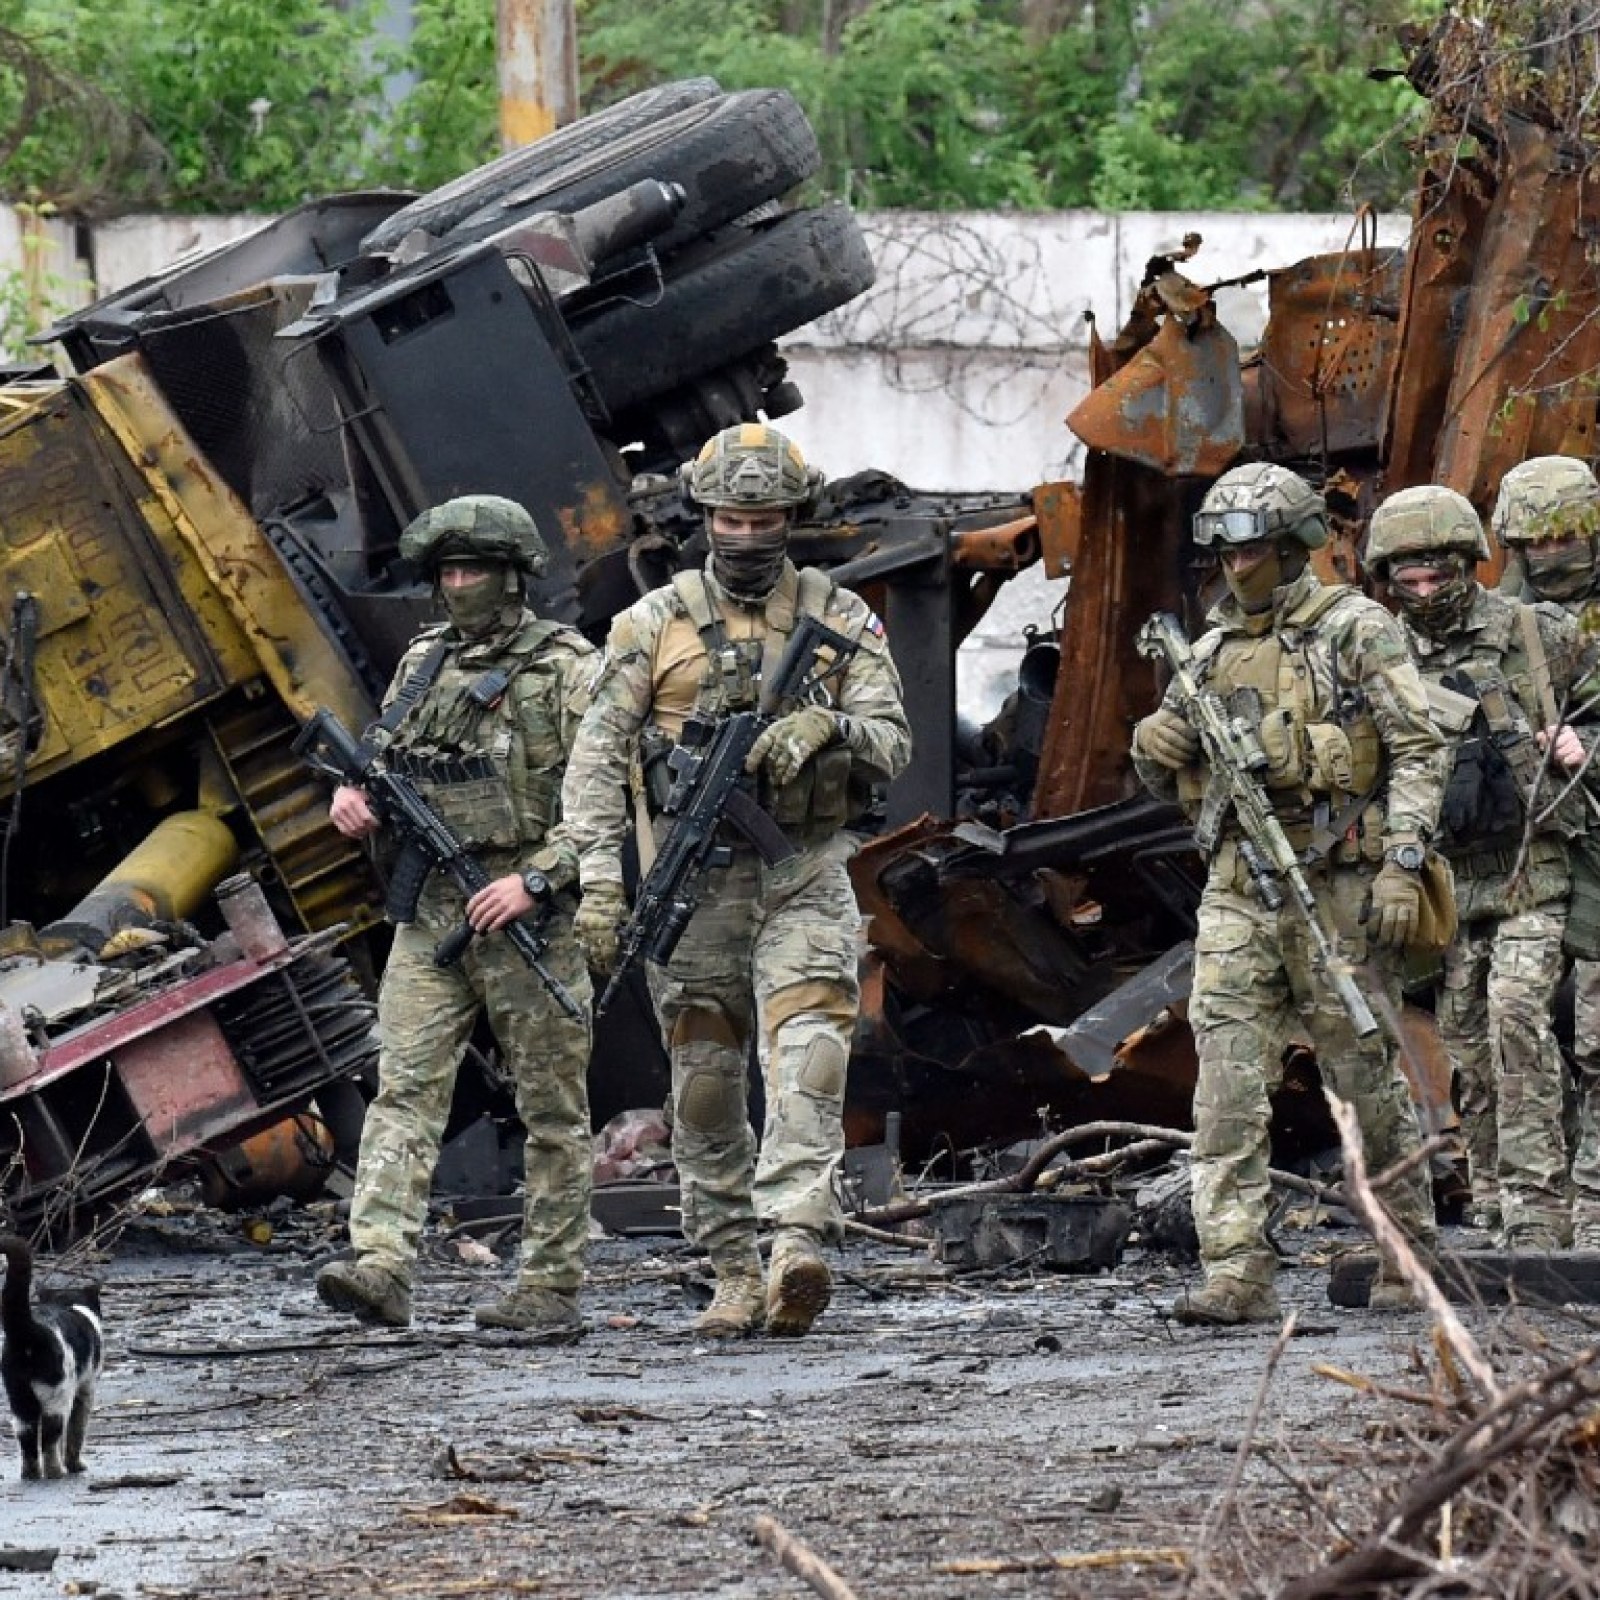 How Russia's 'Marker' Combat Robots Could Impact Ukraine War